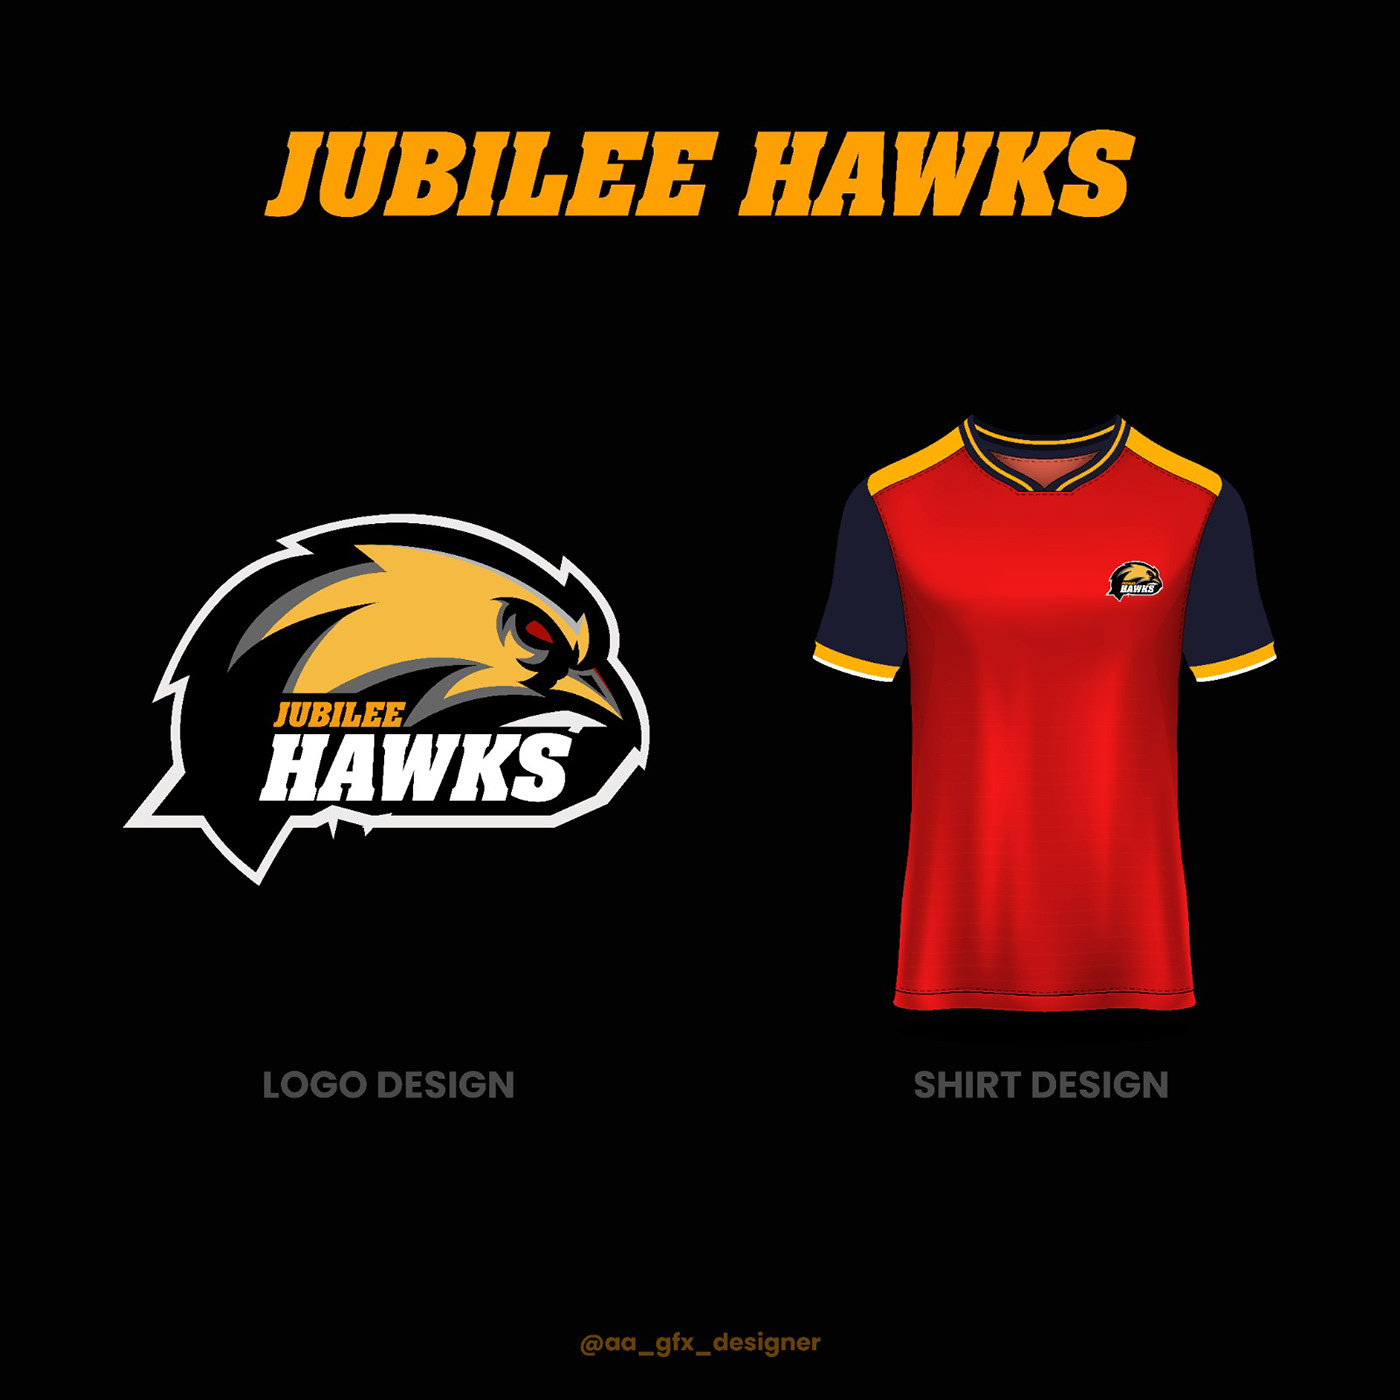 Jubilee hawks design